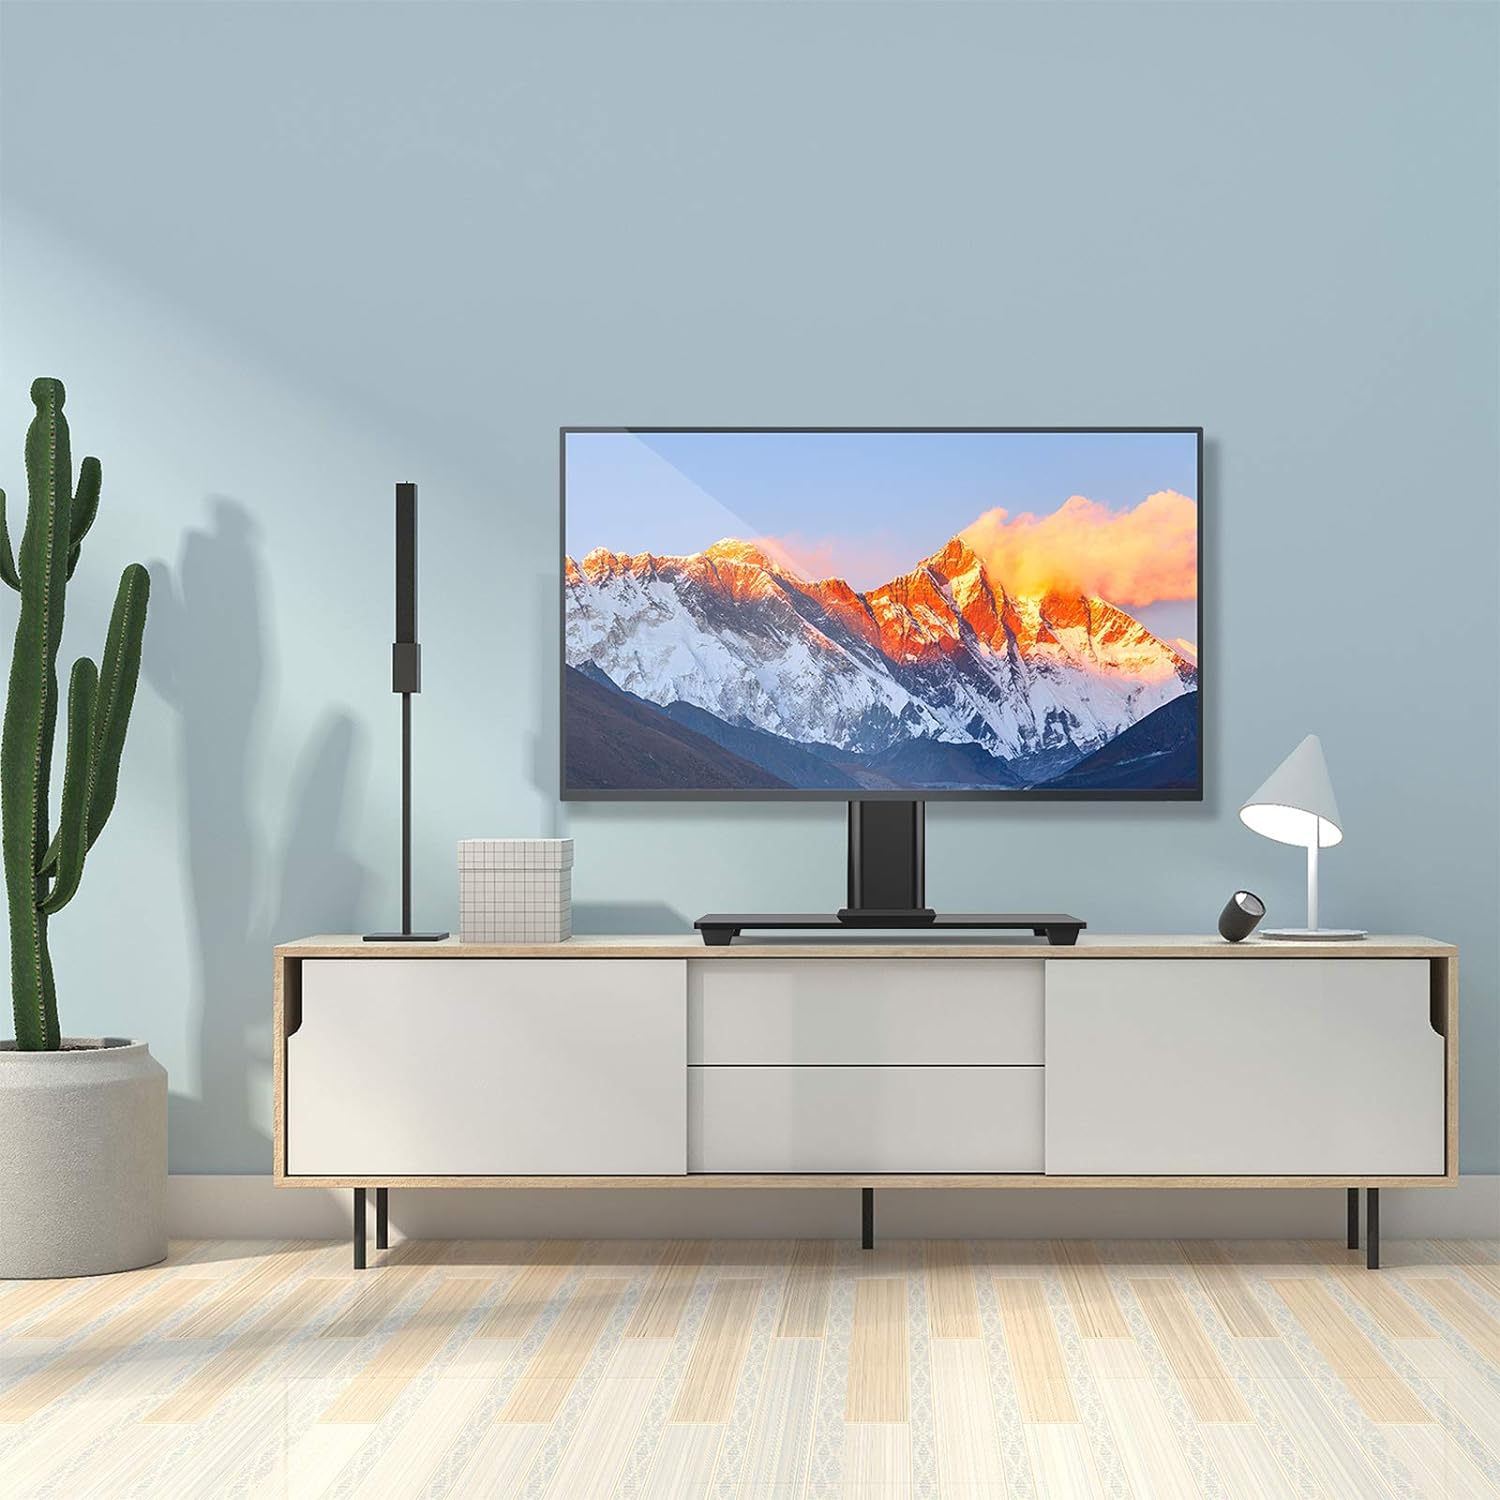 Soporte de TV Soporte de TV de mesa para televisores LCD LED de 32 a 55